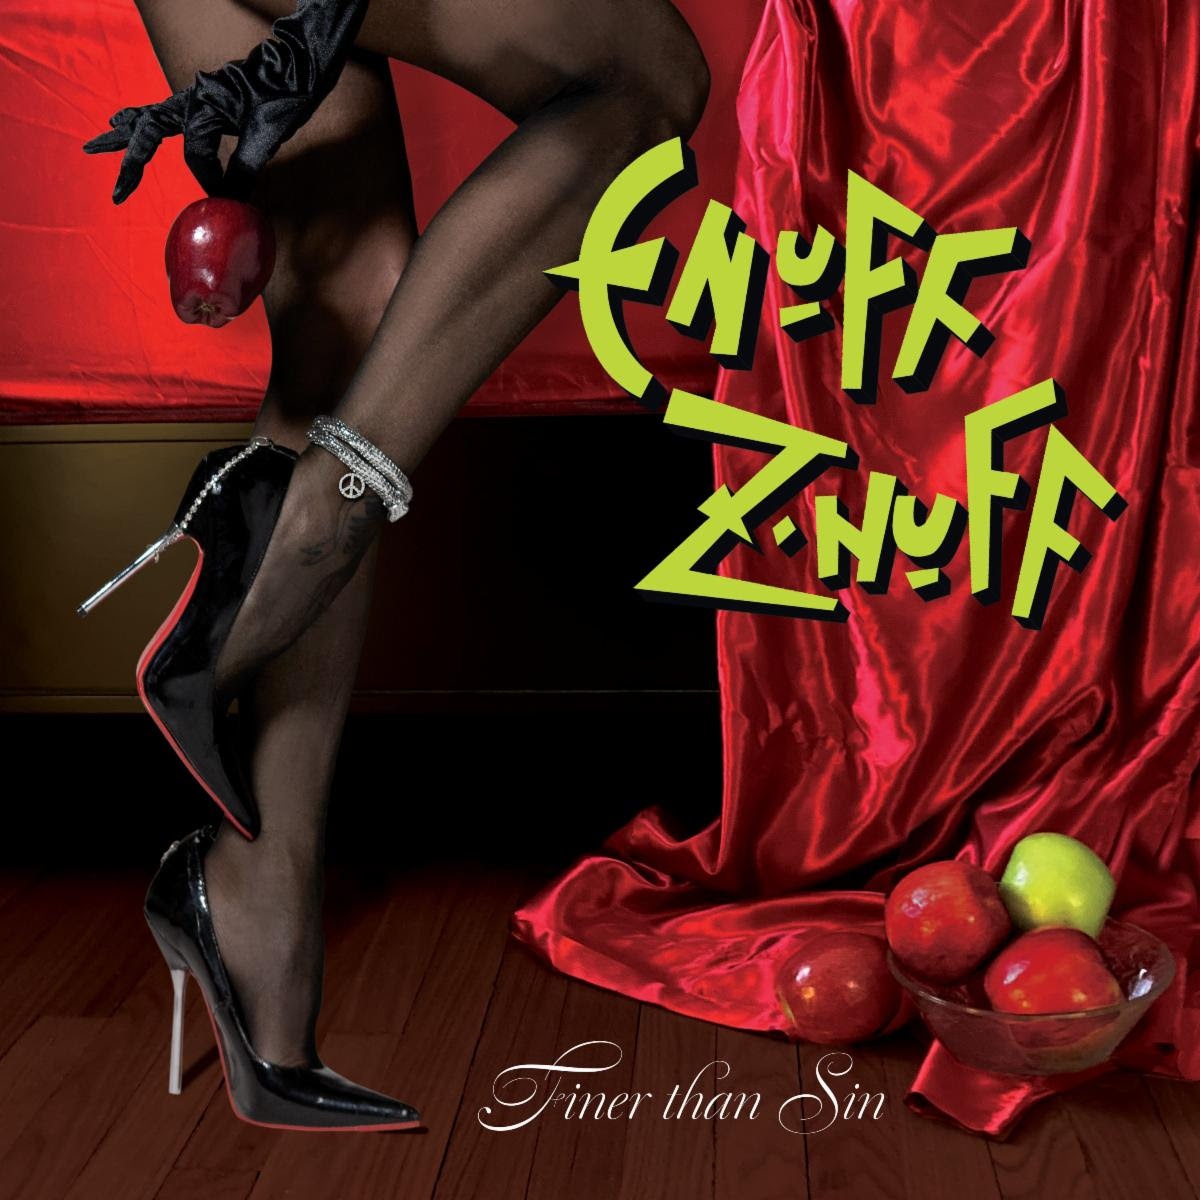 ENUFF Z'NUFF ANNOUNCE NEW STUDIO ALBUM 'FINER THAN SIN'